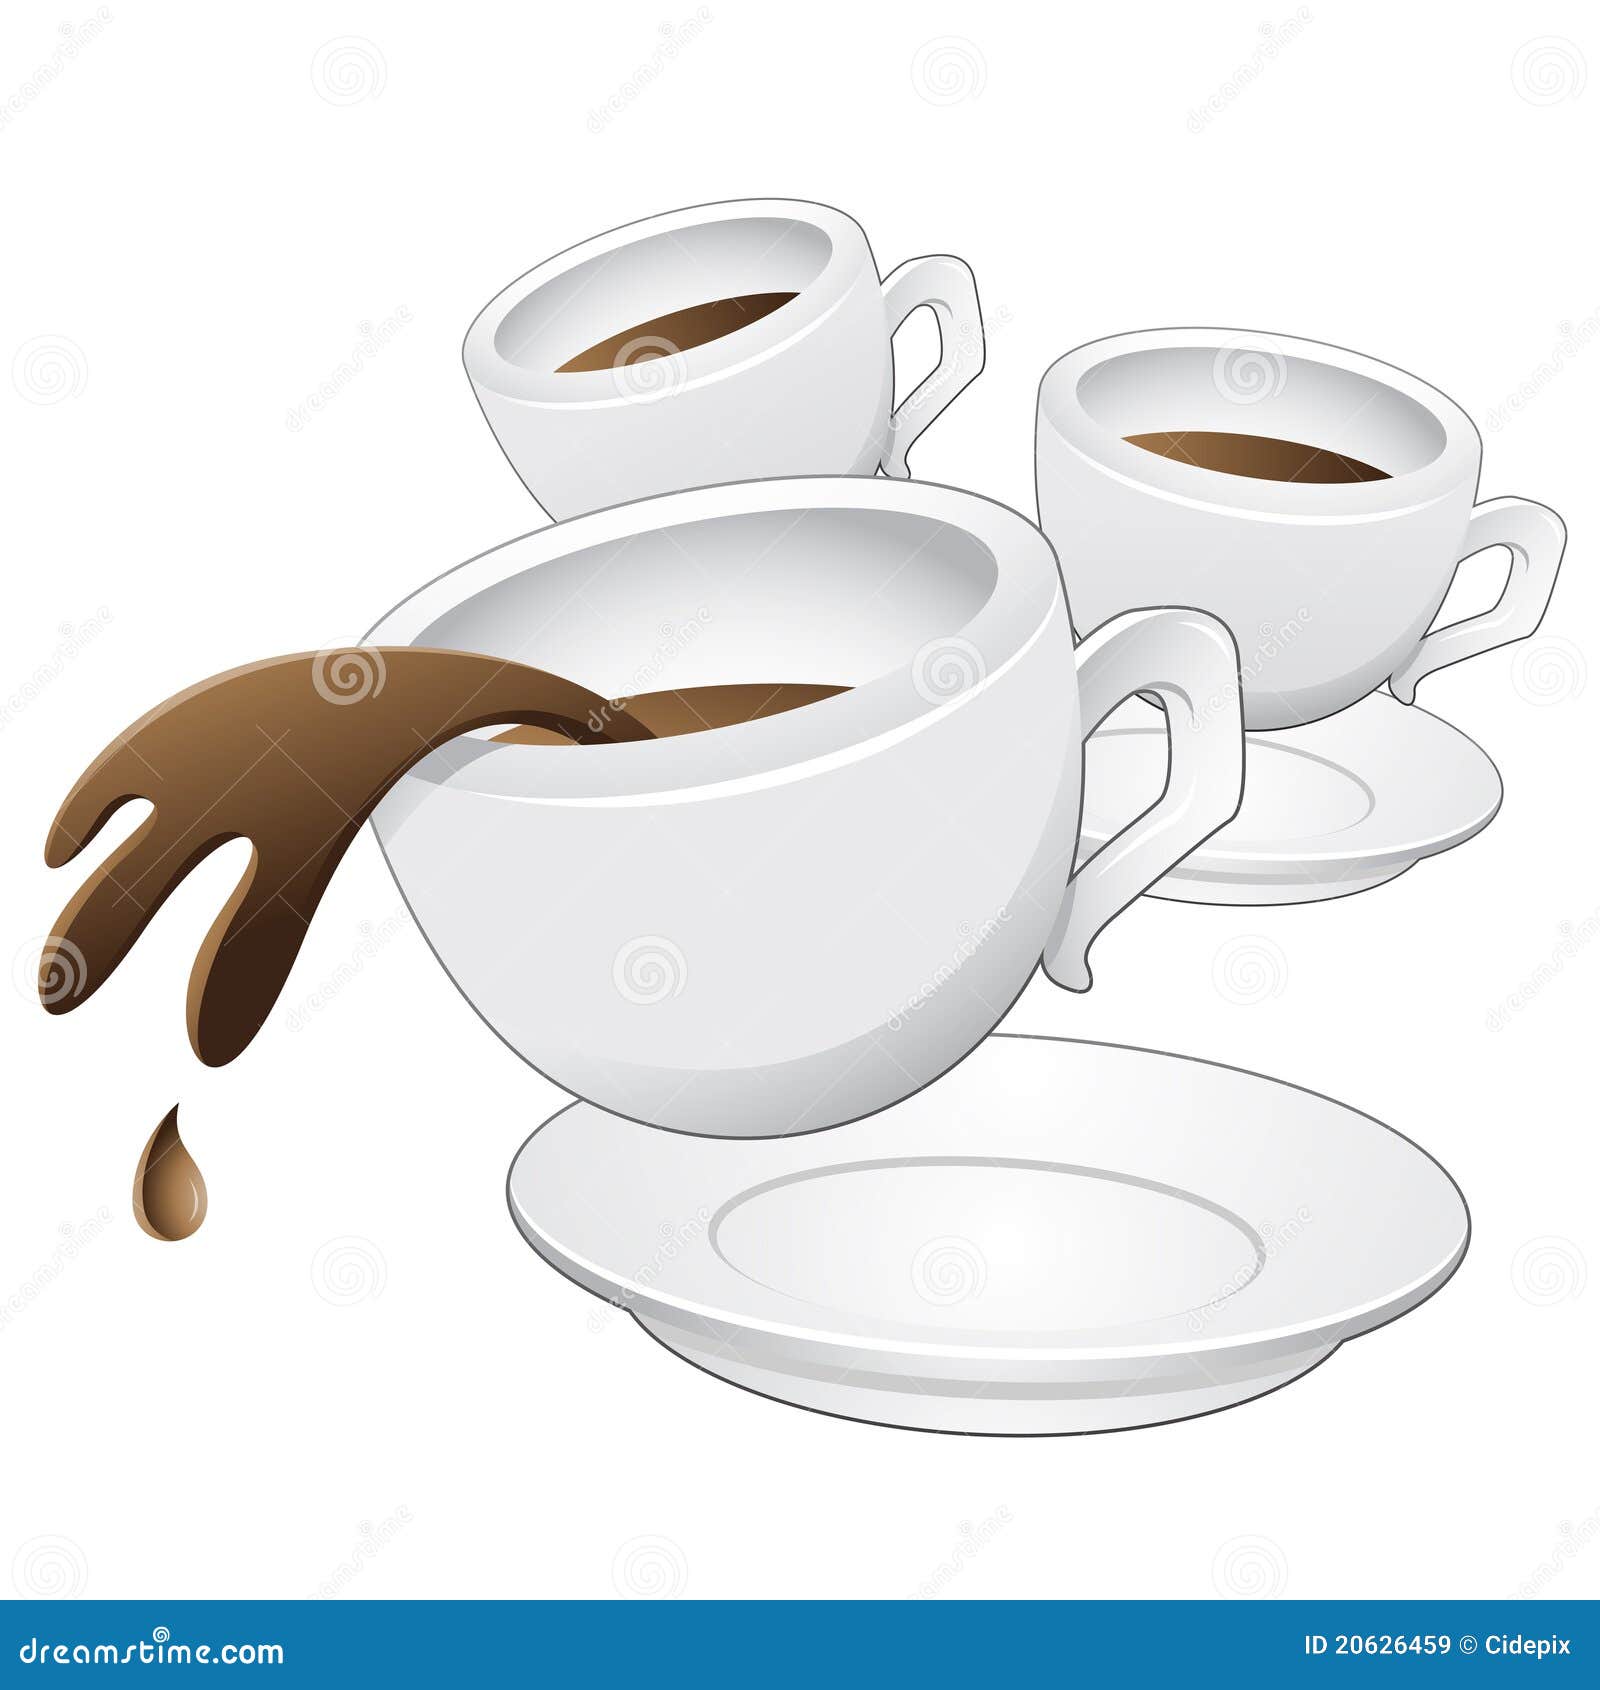 clipart tazas de cafe - photo #34